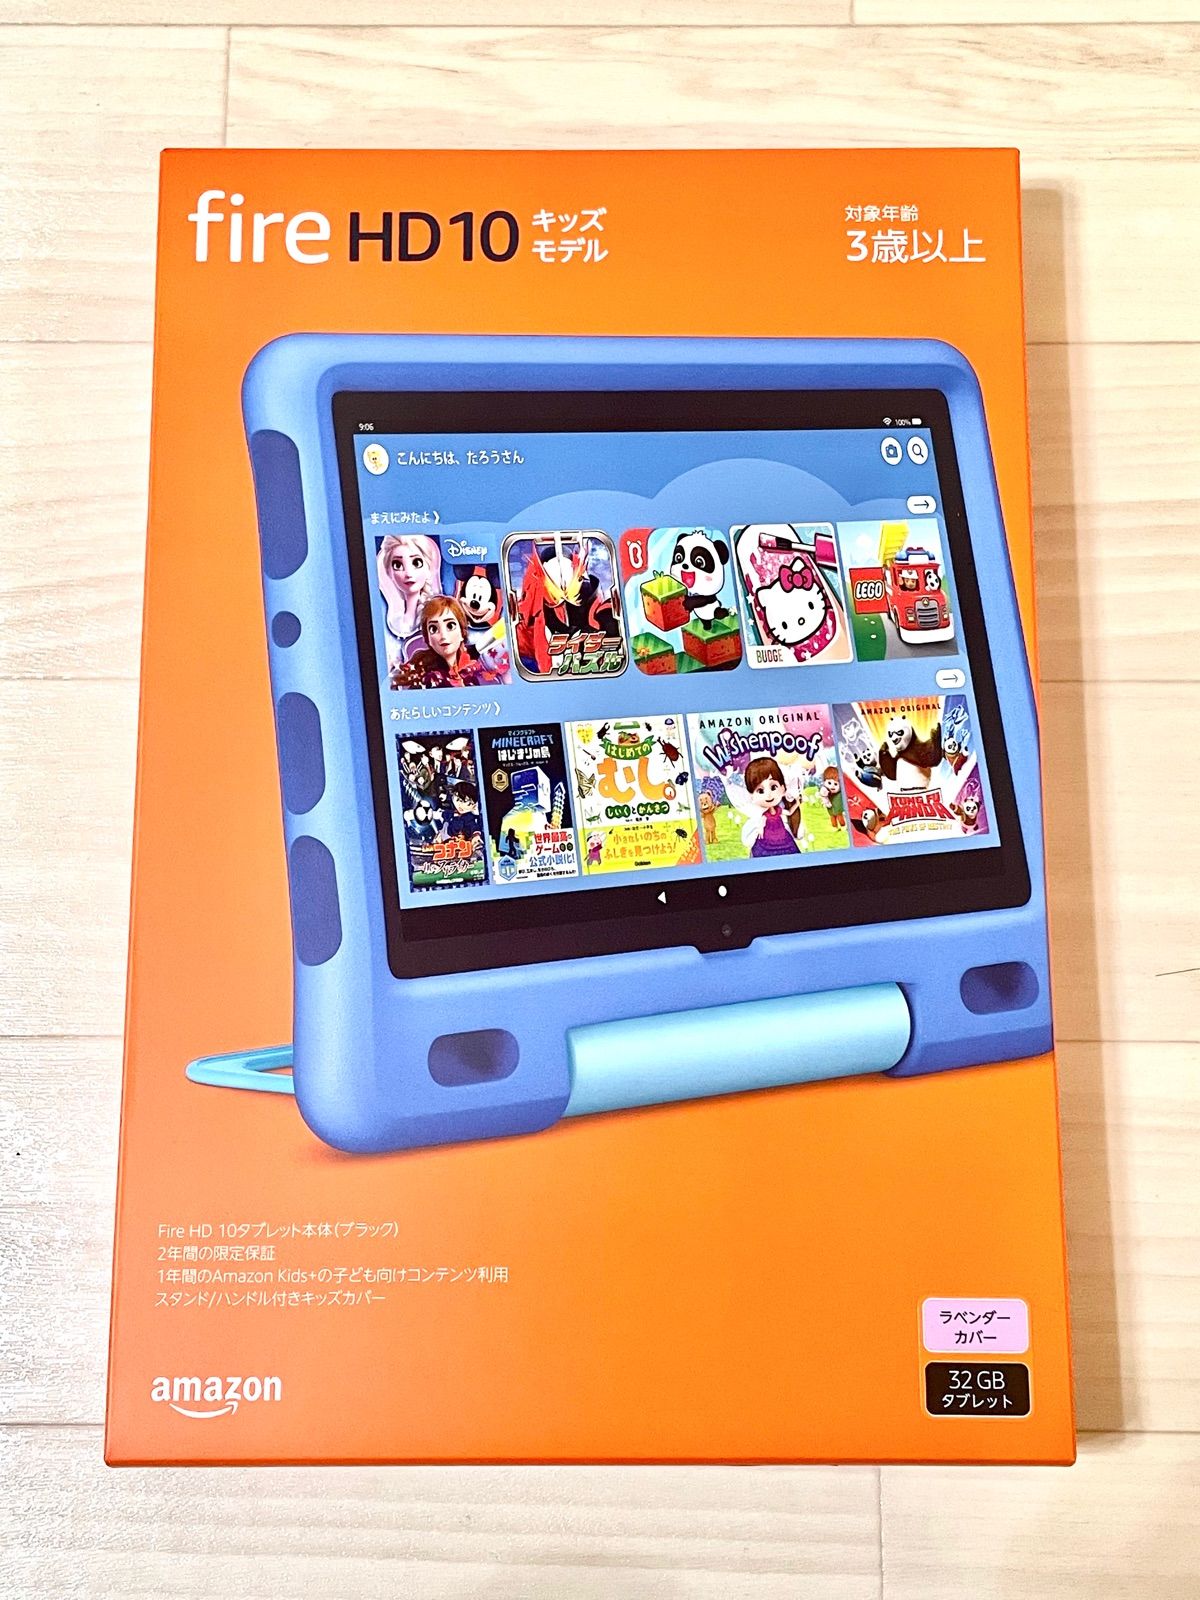 【新品未開封】Fire HD 10 キッズモデル ラベンダー バッグ付き